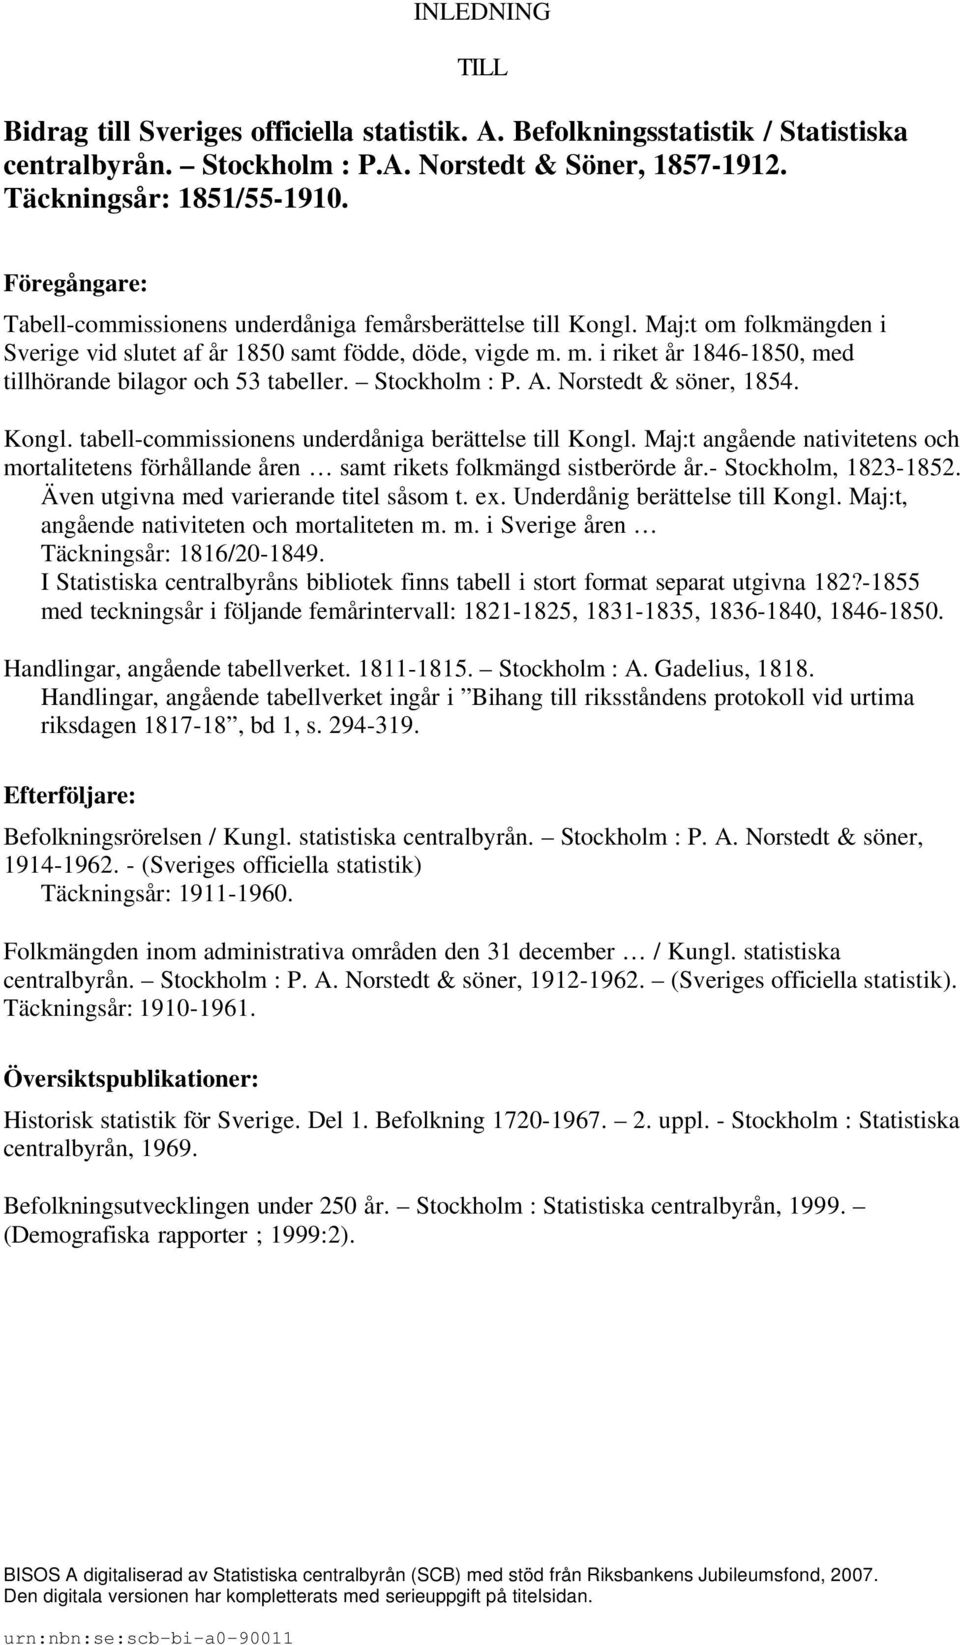 m. i riket år 1846-1850, med tillhörande bilagor och 53 tabeller. Stockholm : P. A. Norstedt & söner, 1854. Kongl. tabell-commissionens underdåniga berättelse till Kongl.